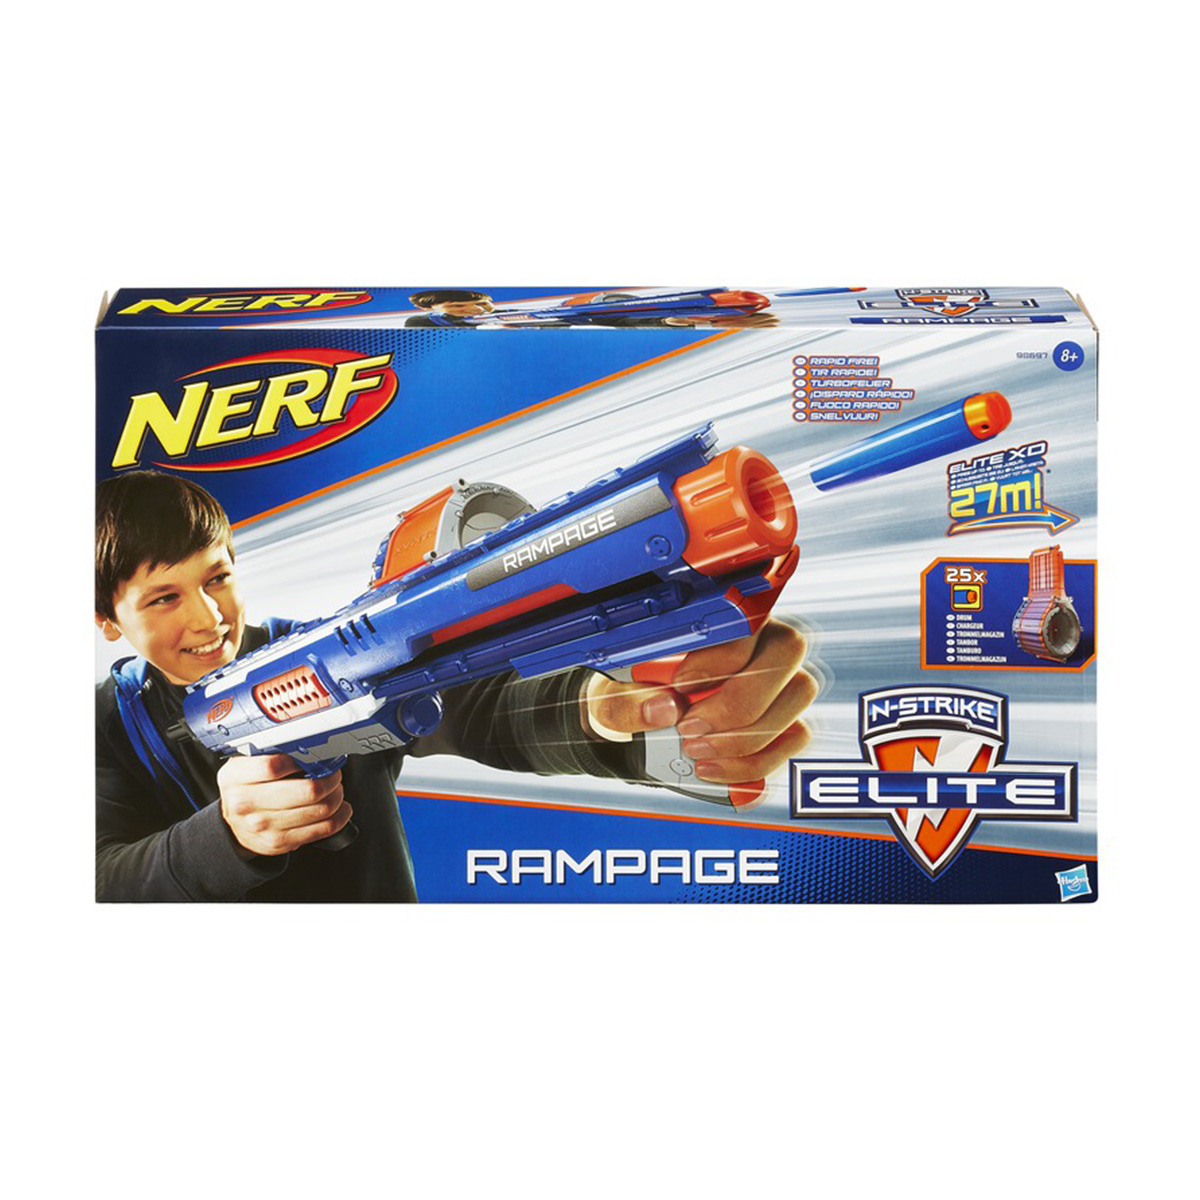 XD Rampage NERF N-Strike Elite